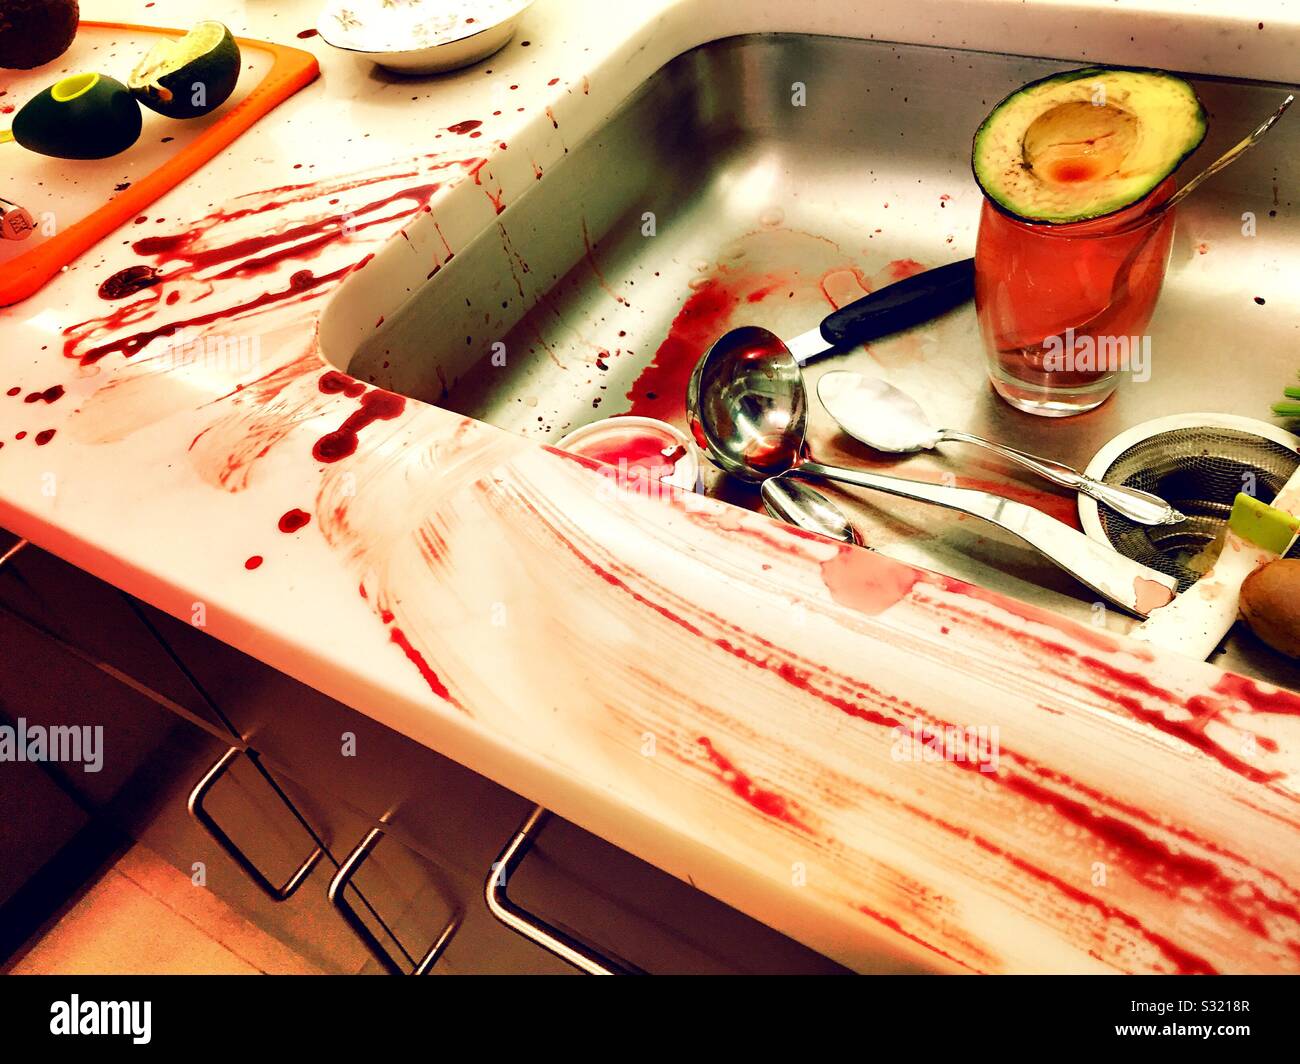 Wohn- Küche ist ein blutiges Chaos nach einem Messer Unfall Stockfoto